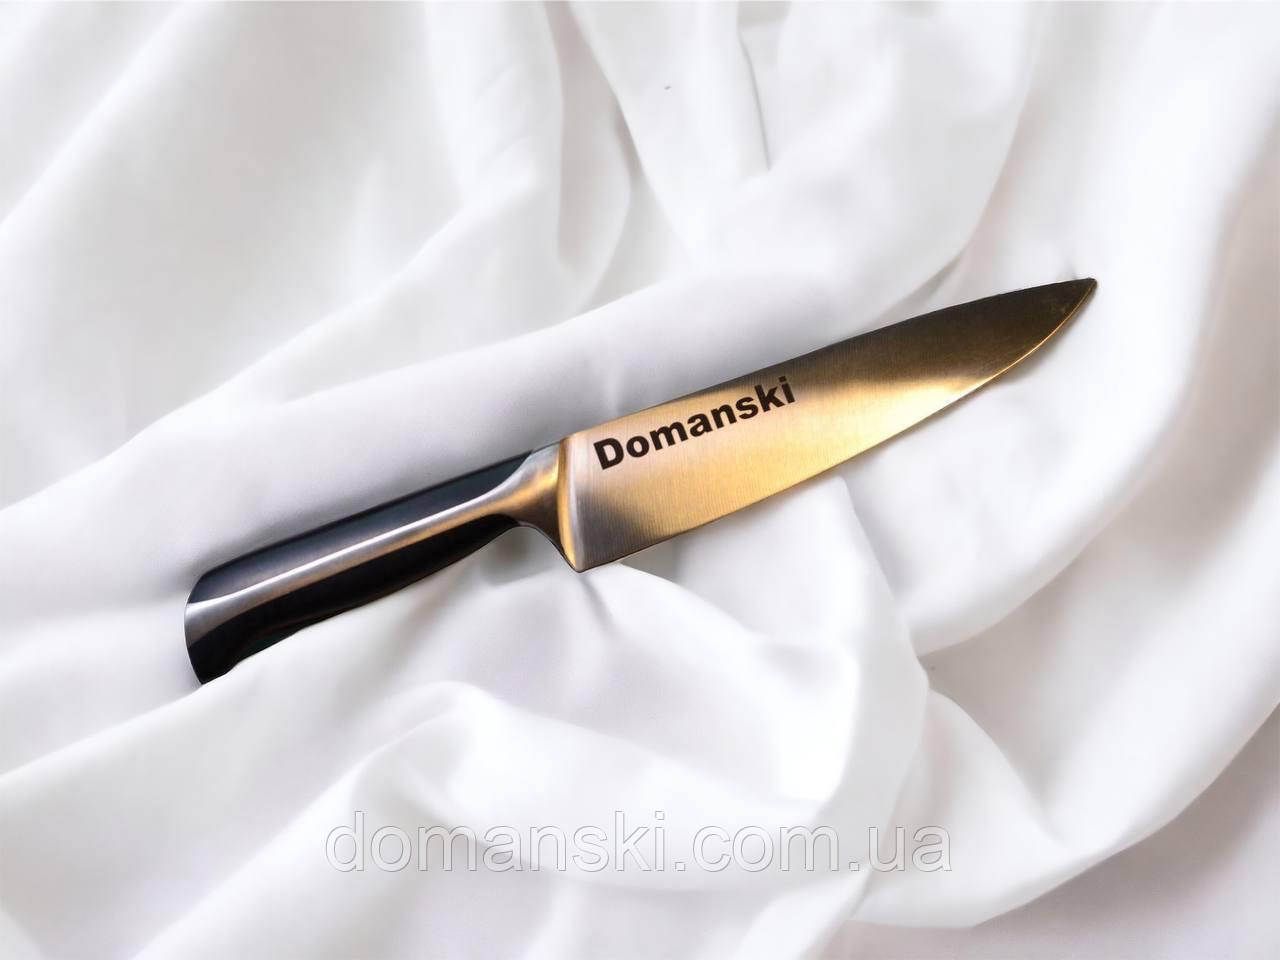 Ніж Domanski: незмінна гострота, елегантність і професіоналізм у кожному русі. Шеф нож.